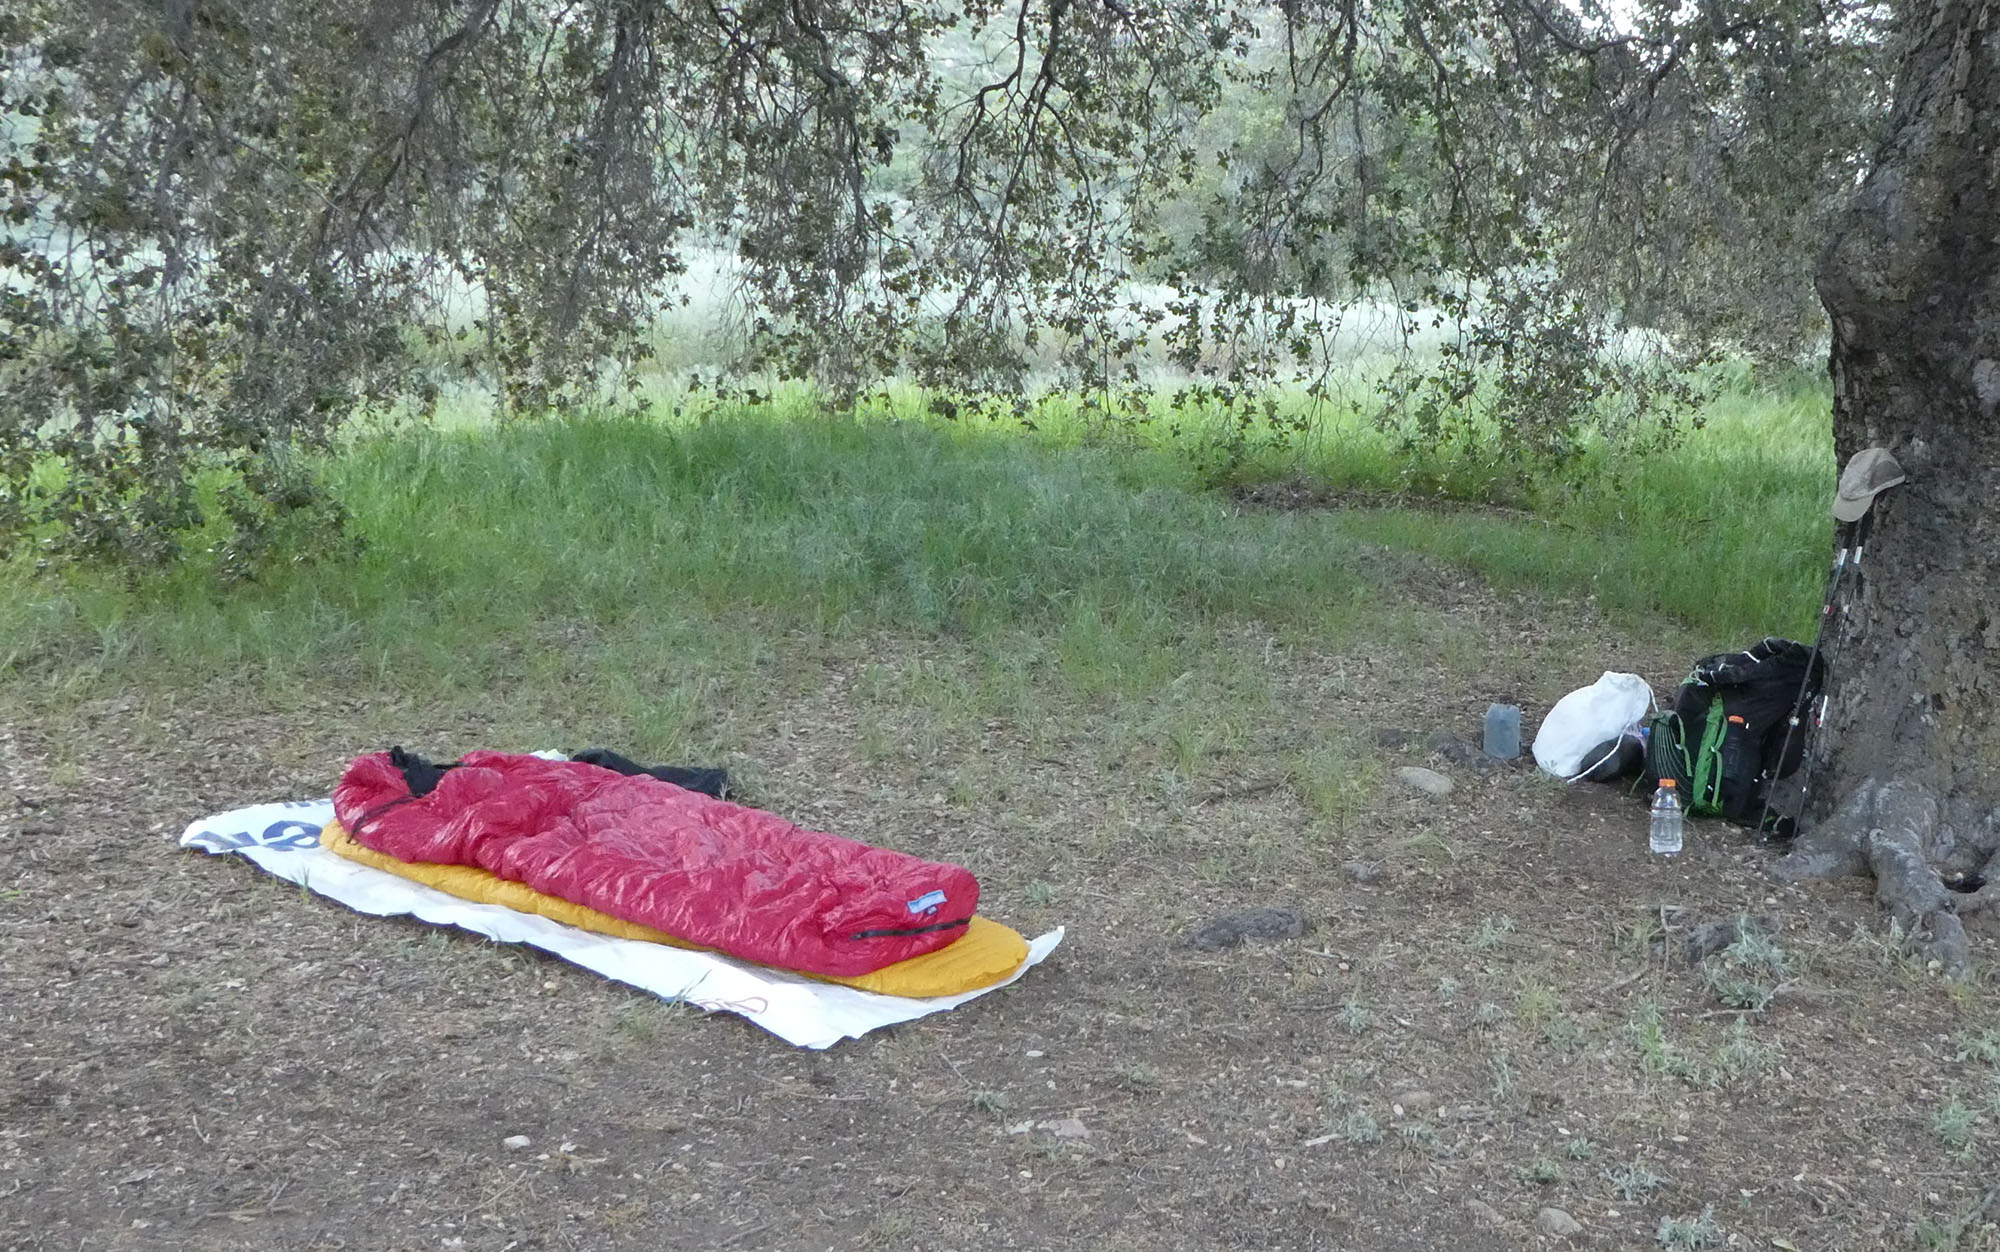 A tent footprint lies under a sleep system.